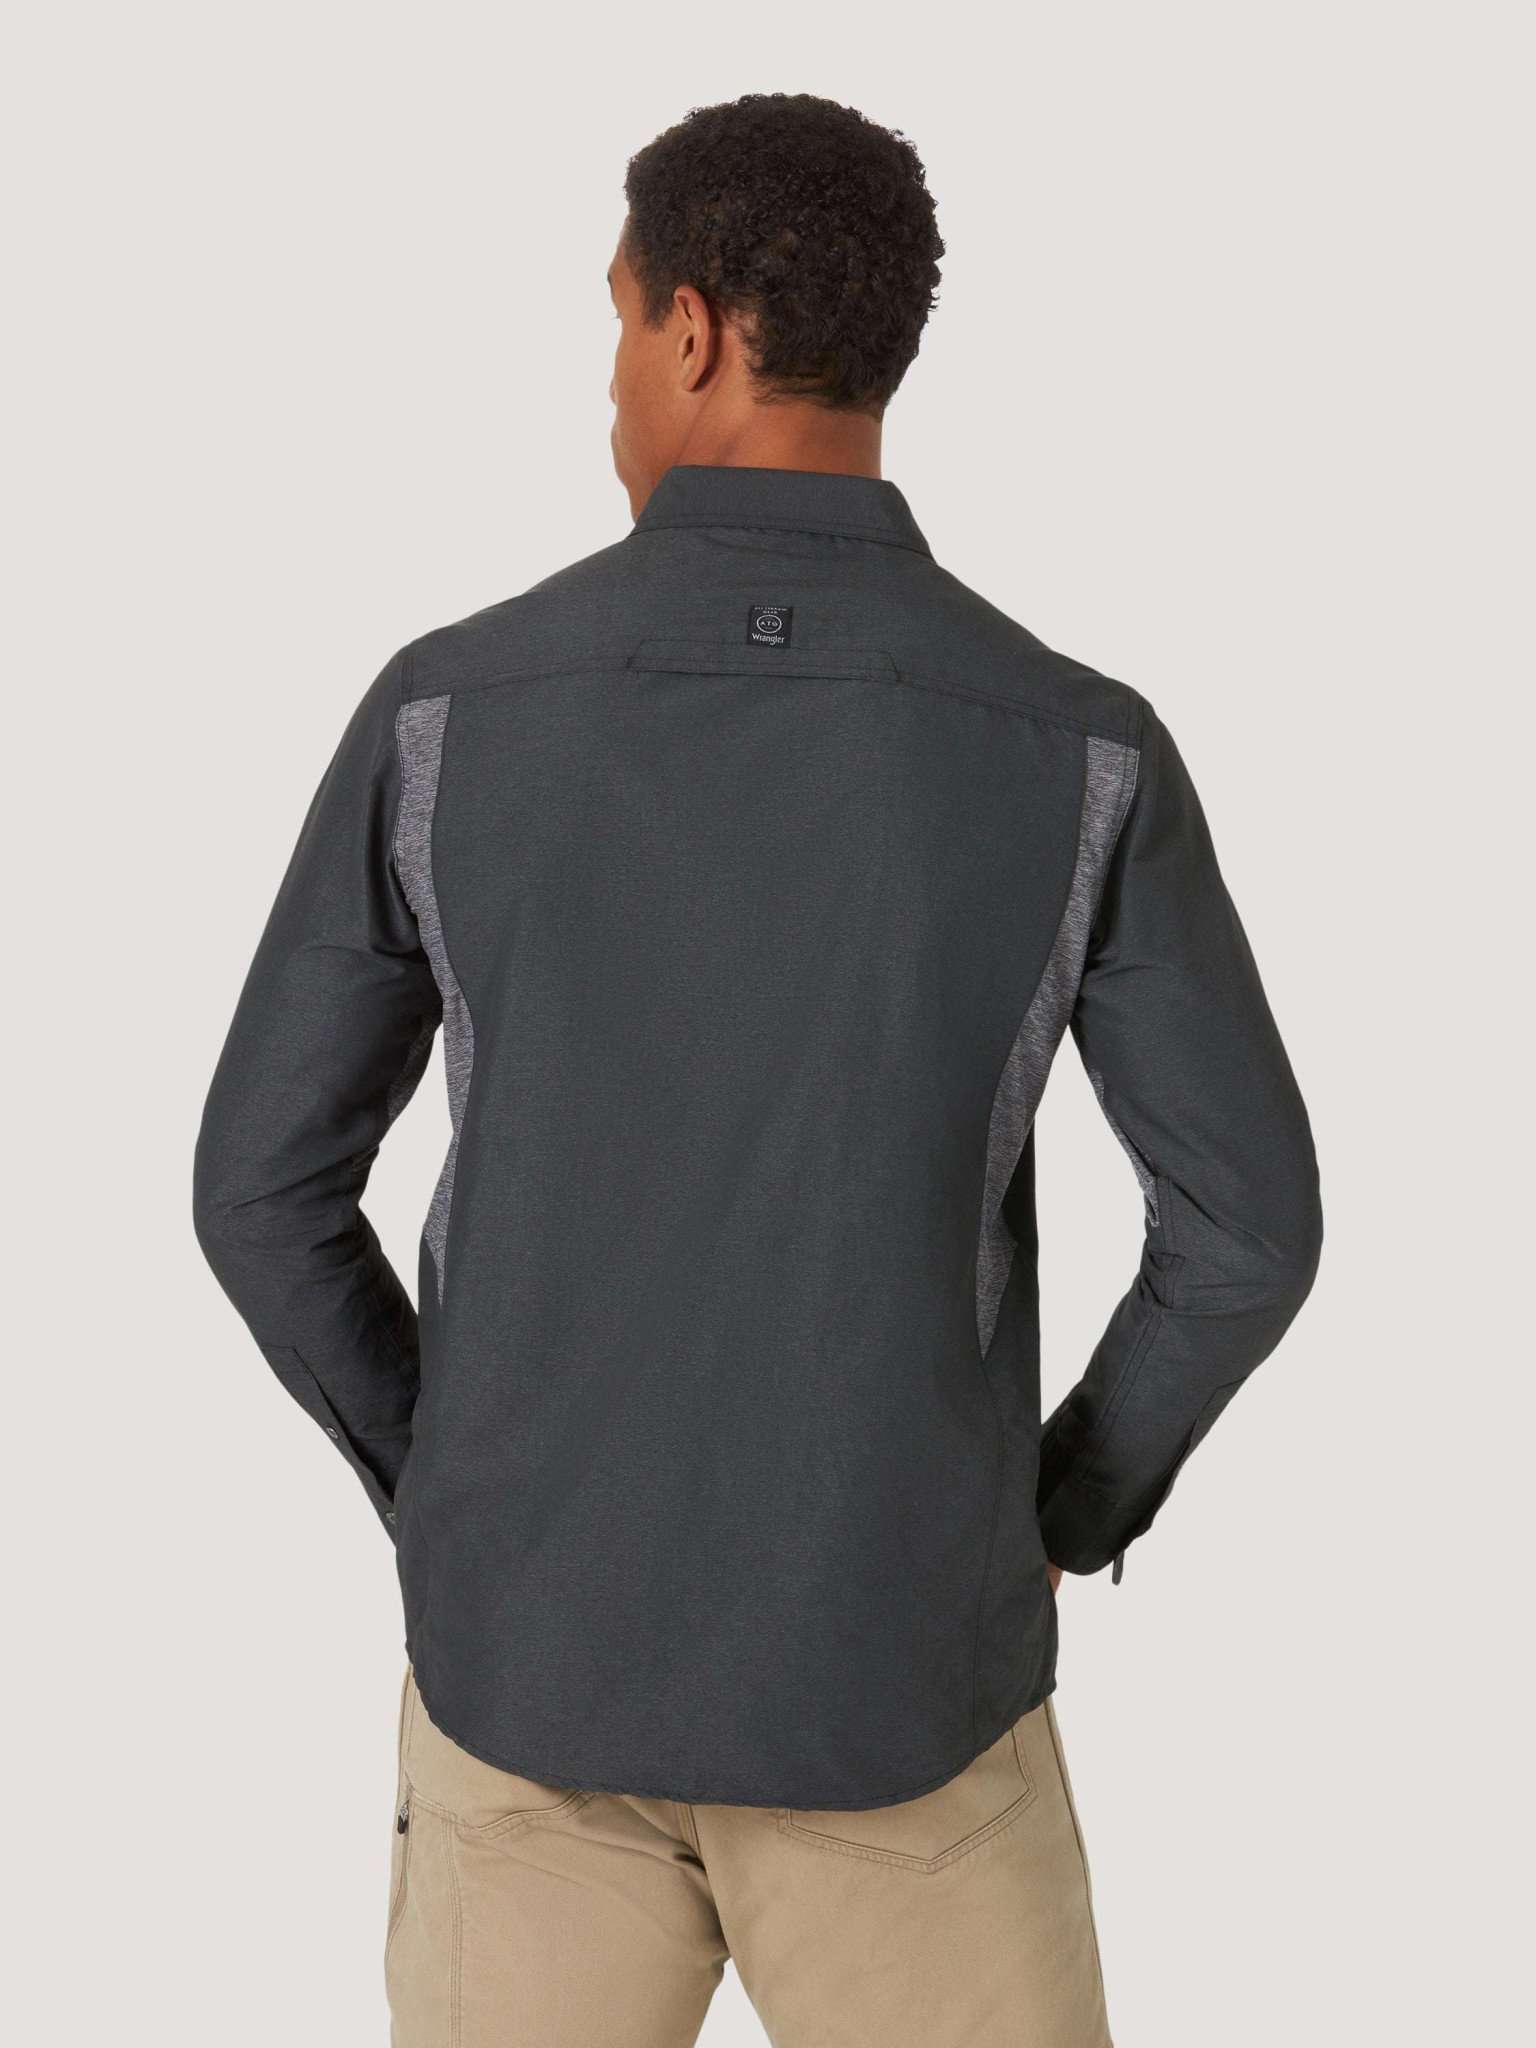 All Terrain Gear Mixed Material Shirt in Black Hemden Wrangler   